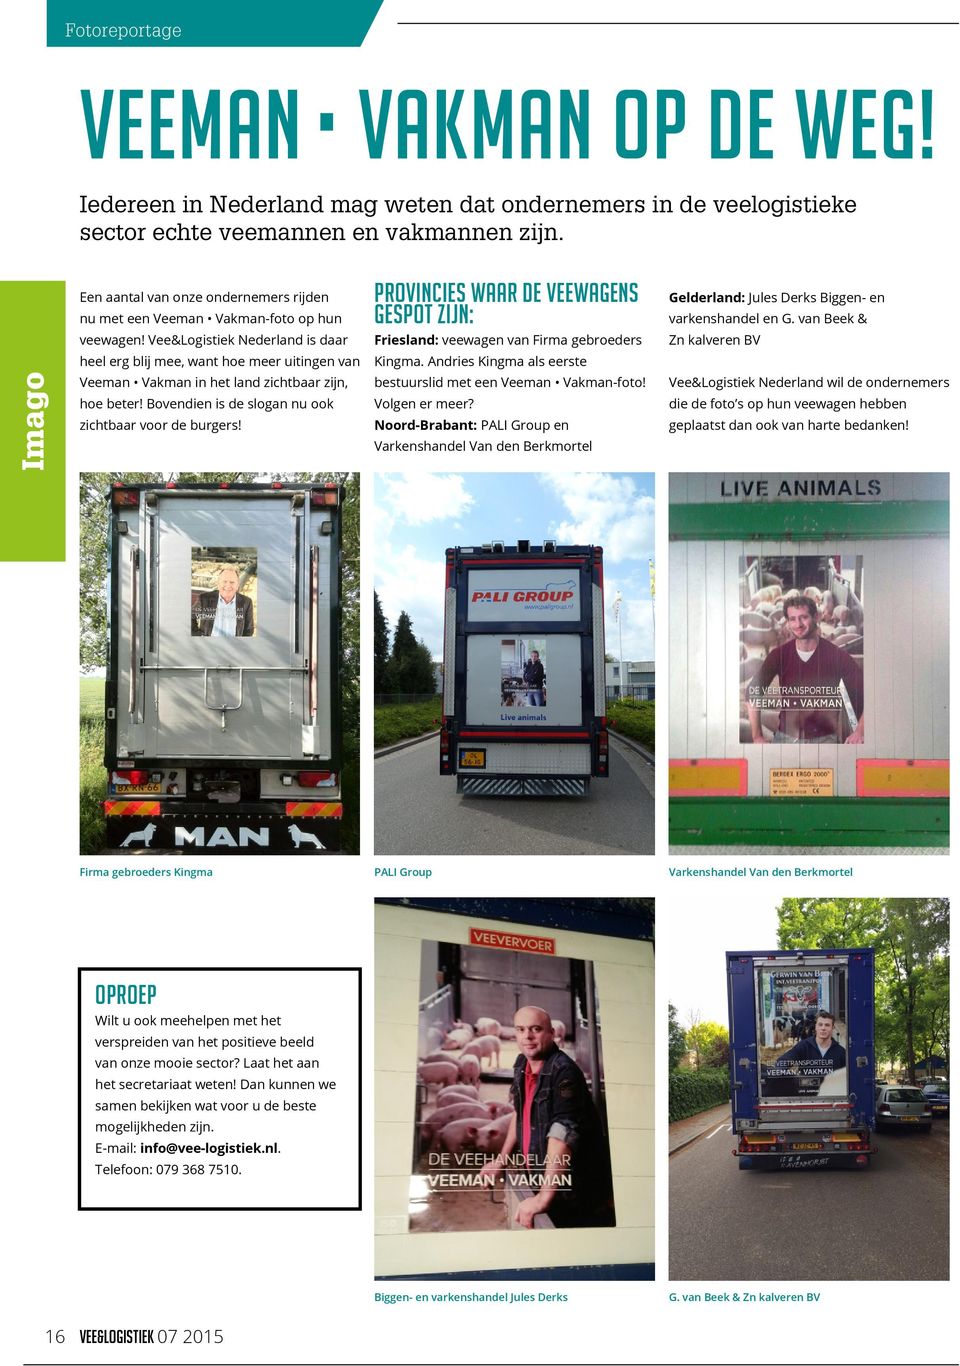 Vee&Logistiek Nederland is daar heel erg blij mee, want hoe meer uitingen van Veeman Vakman in het land zichtbaar zijn, hoe beter! Bovendien is de slogan nu ook zichtbaar voor de burgers!